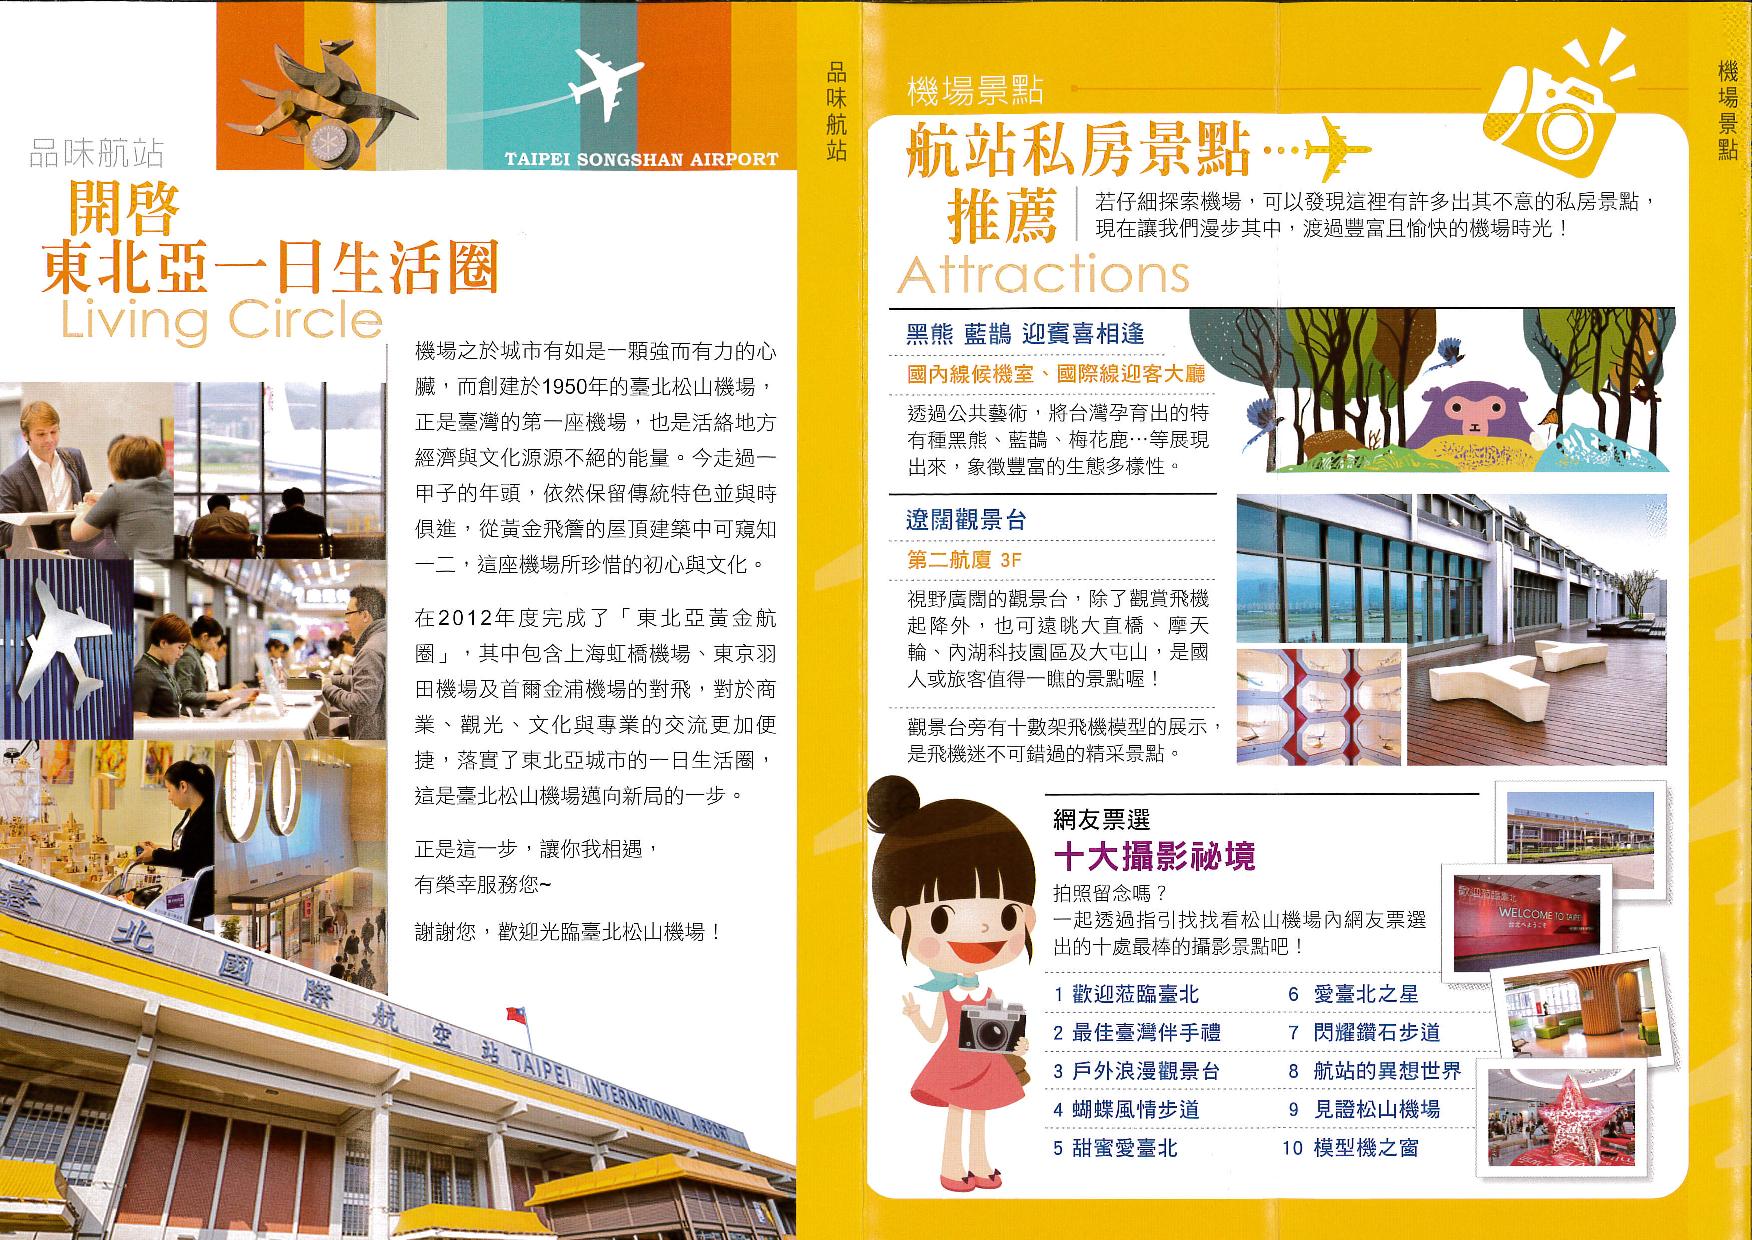 臺北國際航空站旅客服務指南宣導摺頁4